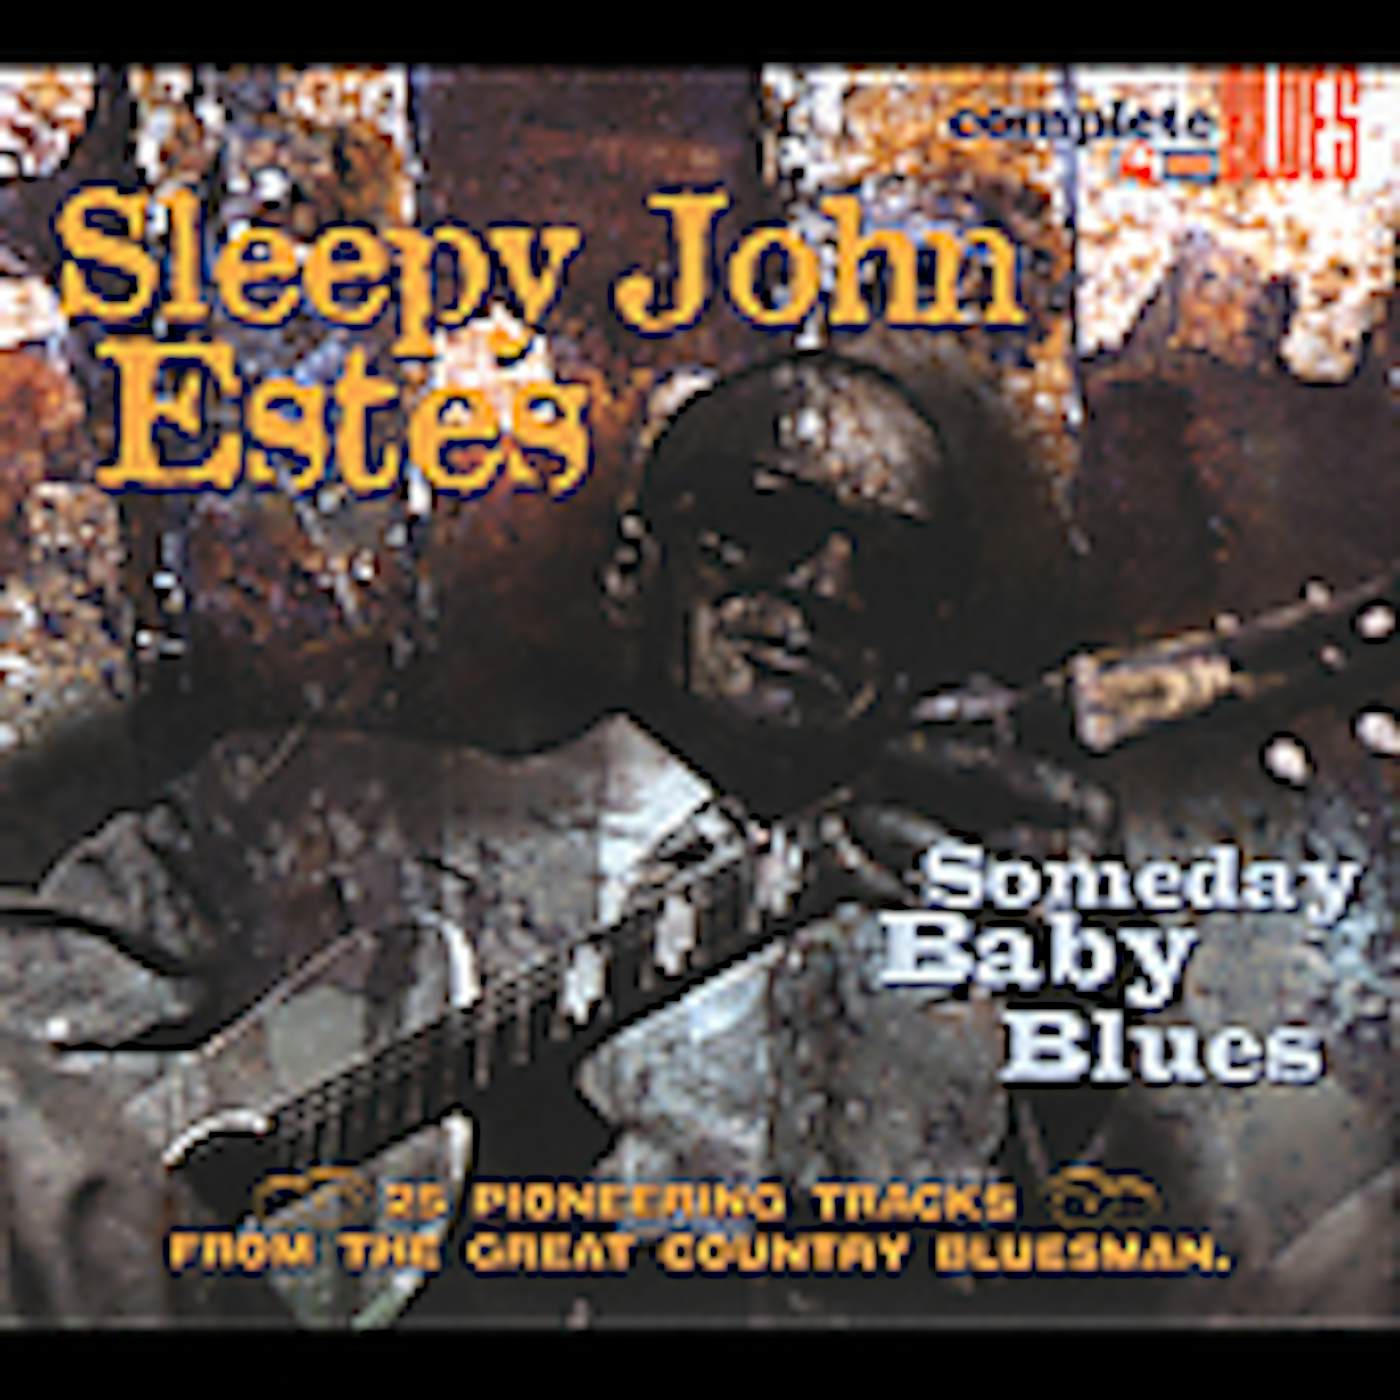 Sleepy John Estes SOMEDAY BABY BLUES CD